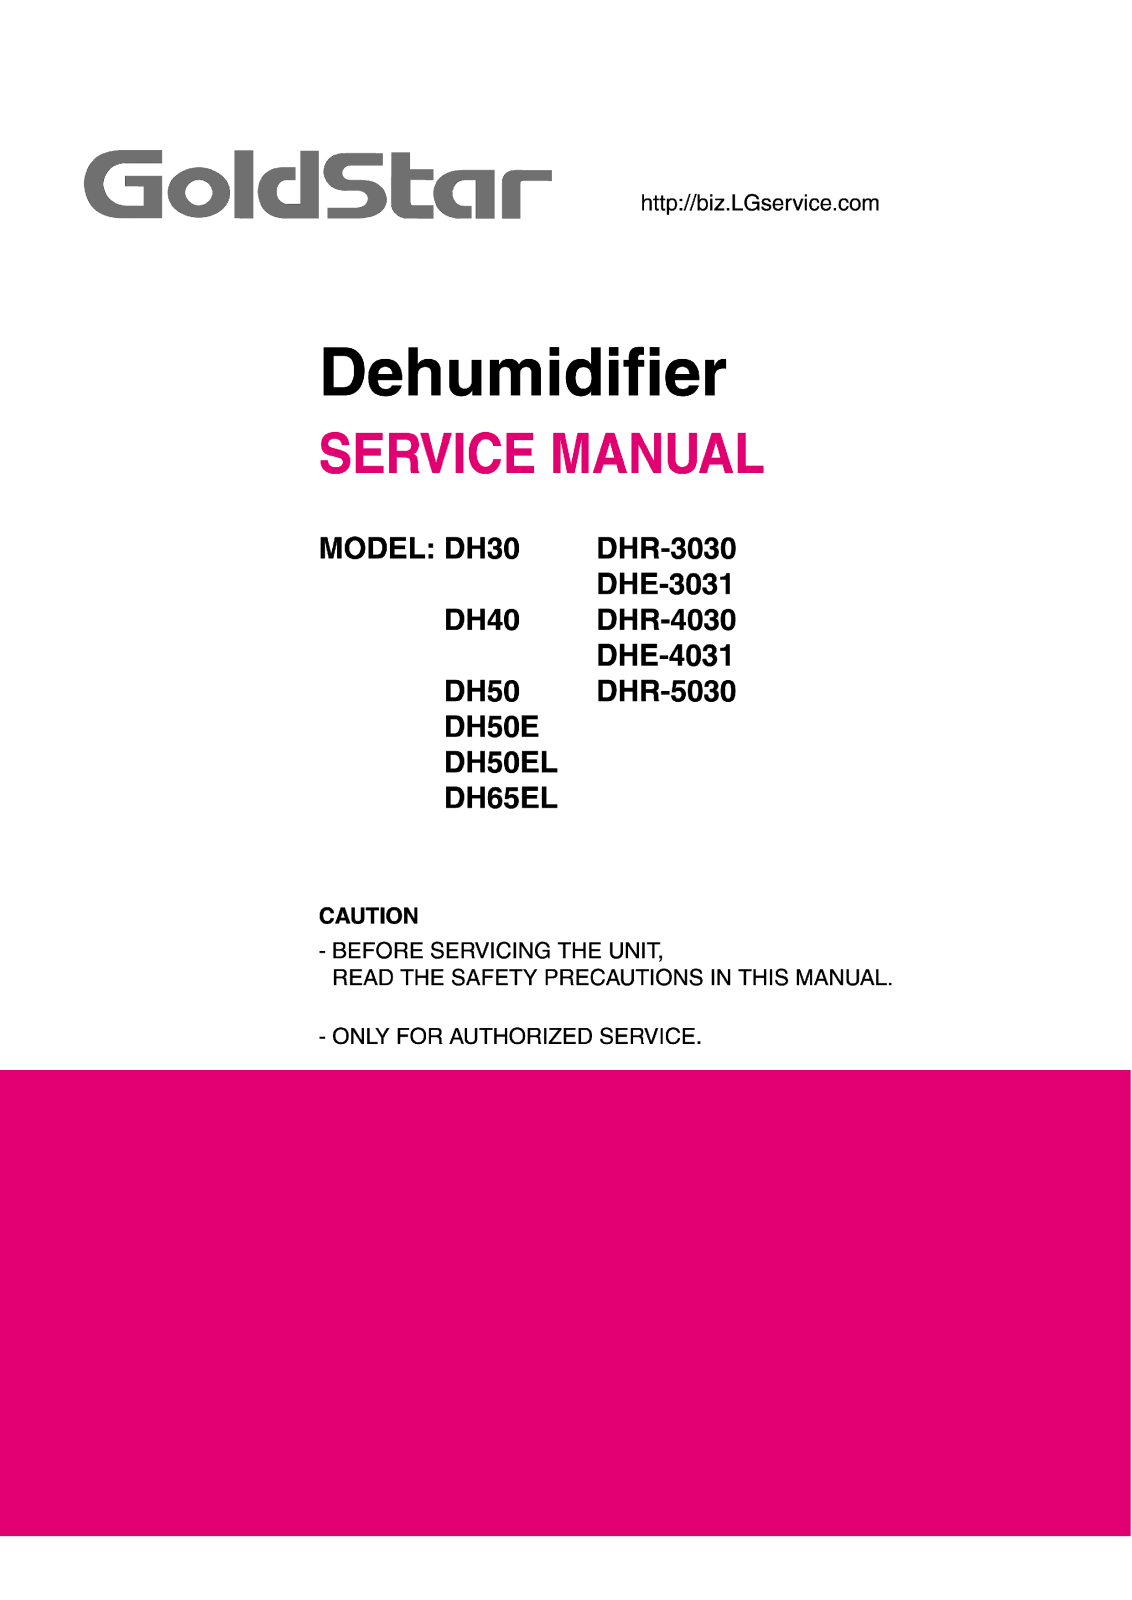 Lg Dhe-3031, Dhe-3031 Service Manual